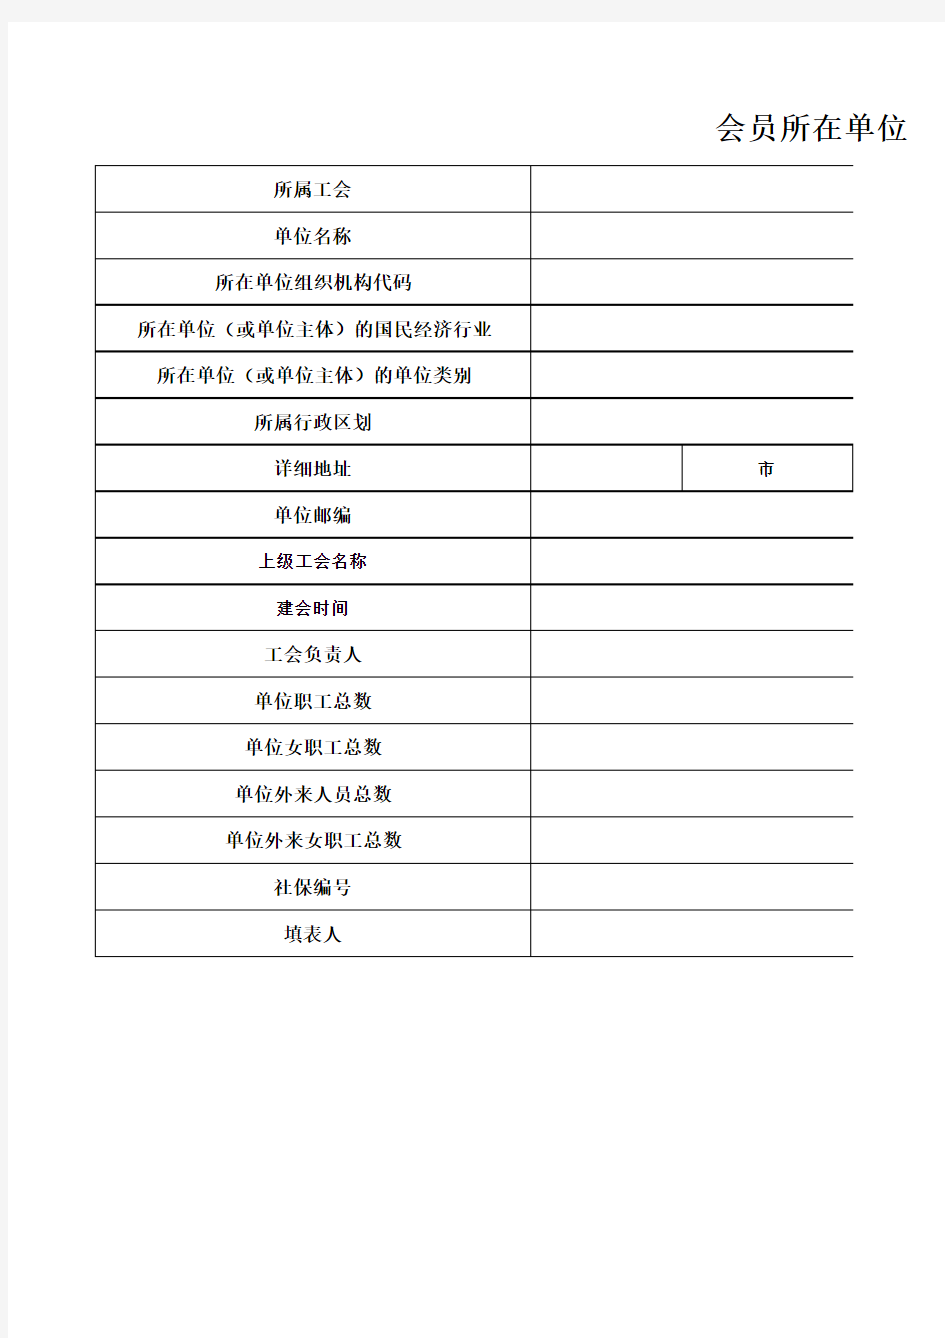 河南会员所在单位基本信息登记表